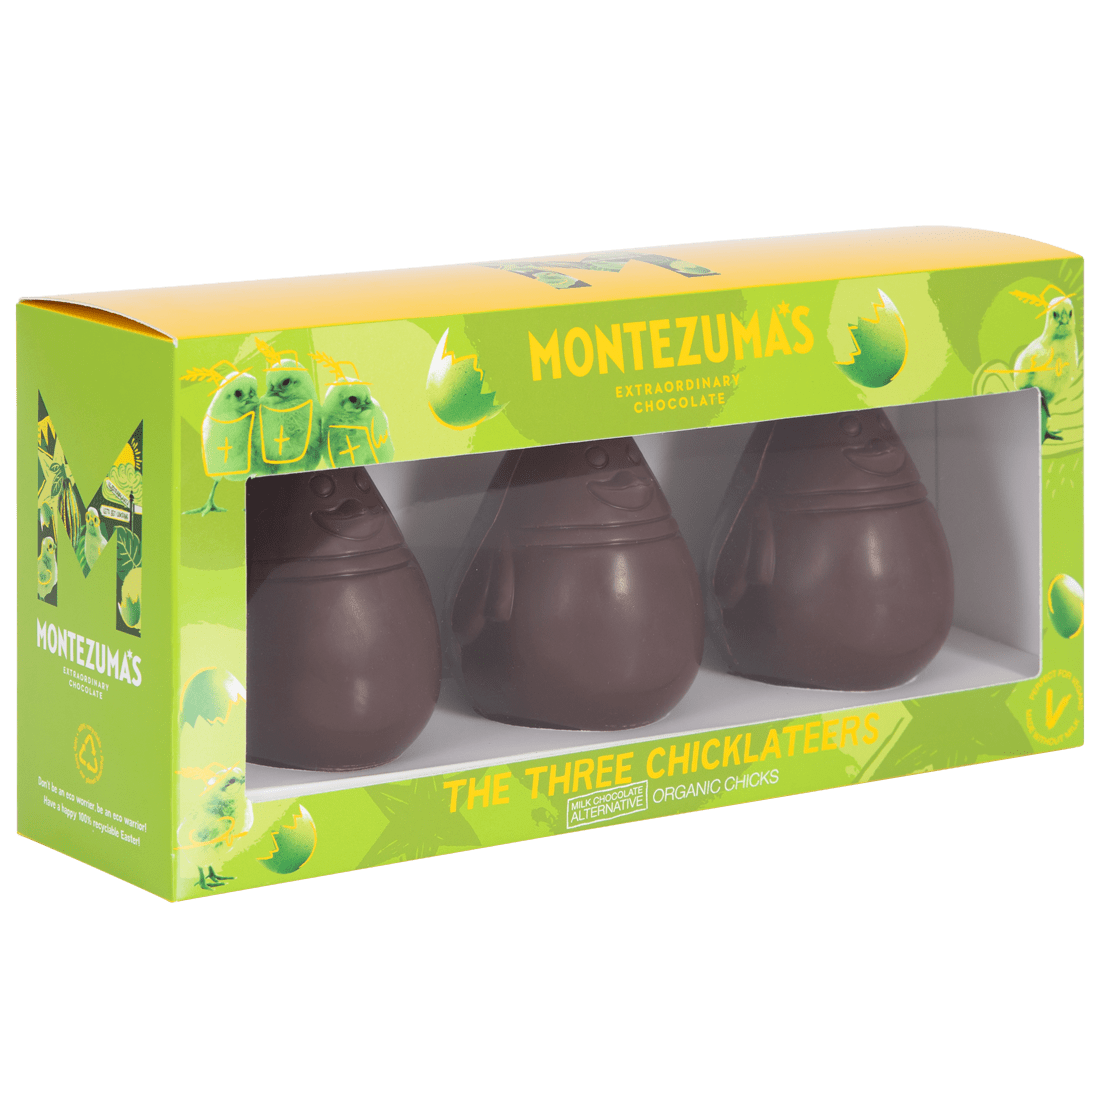 Montezuma's chocolate chicks